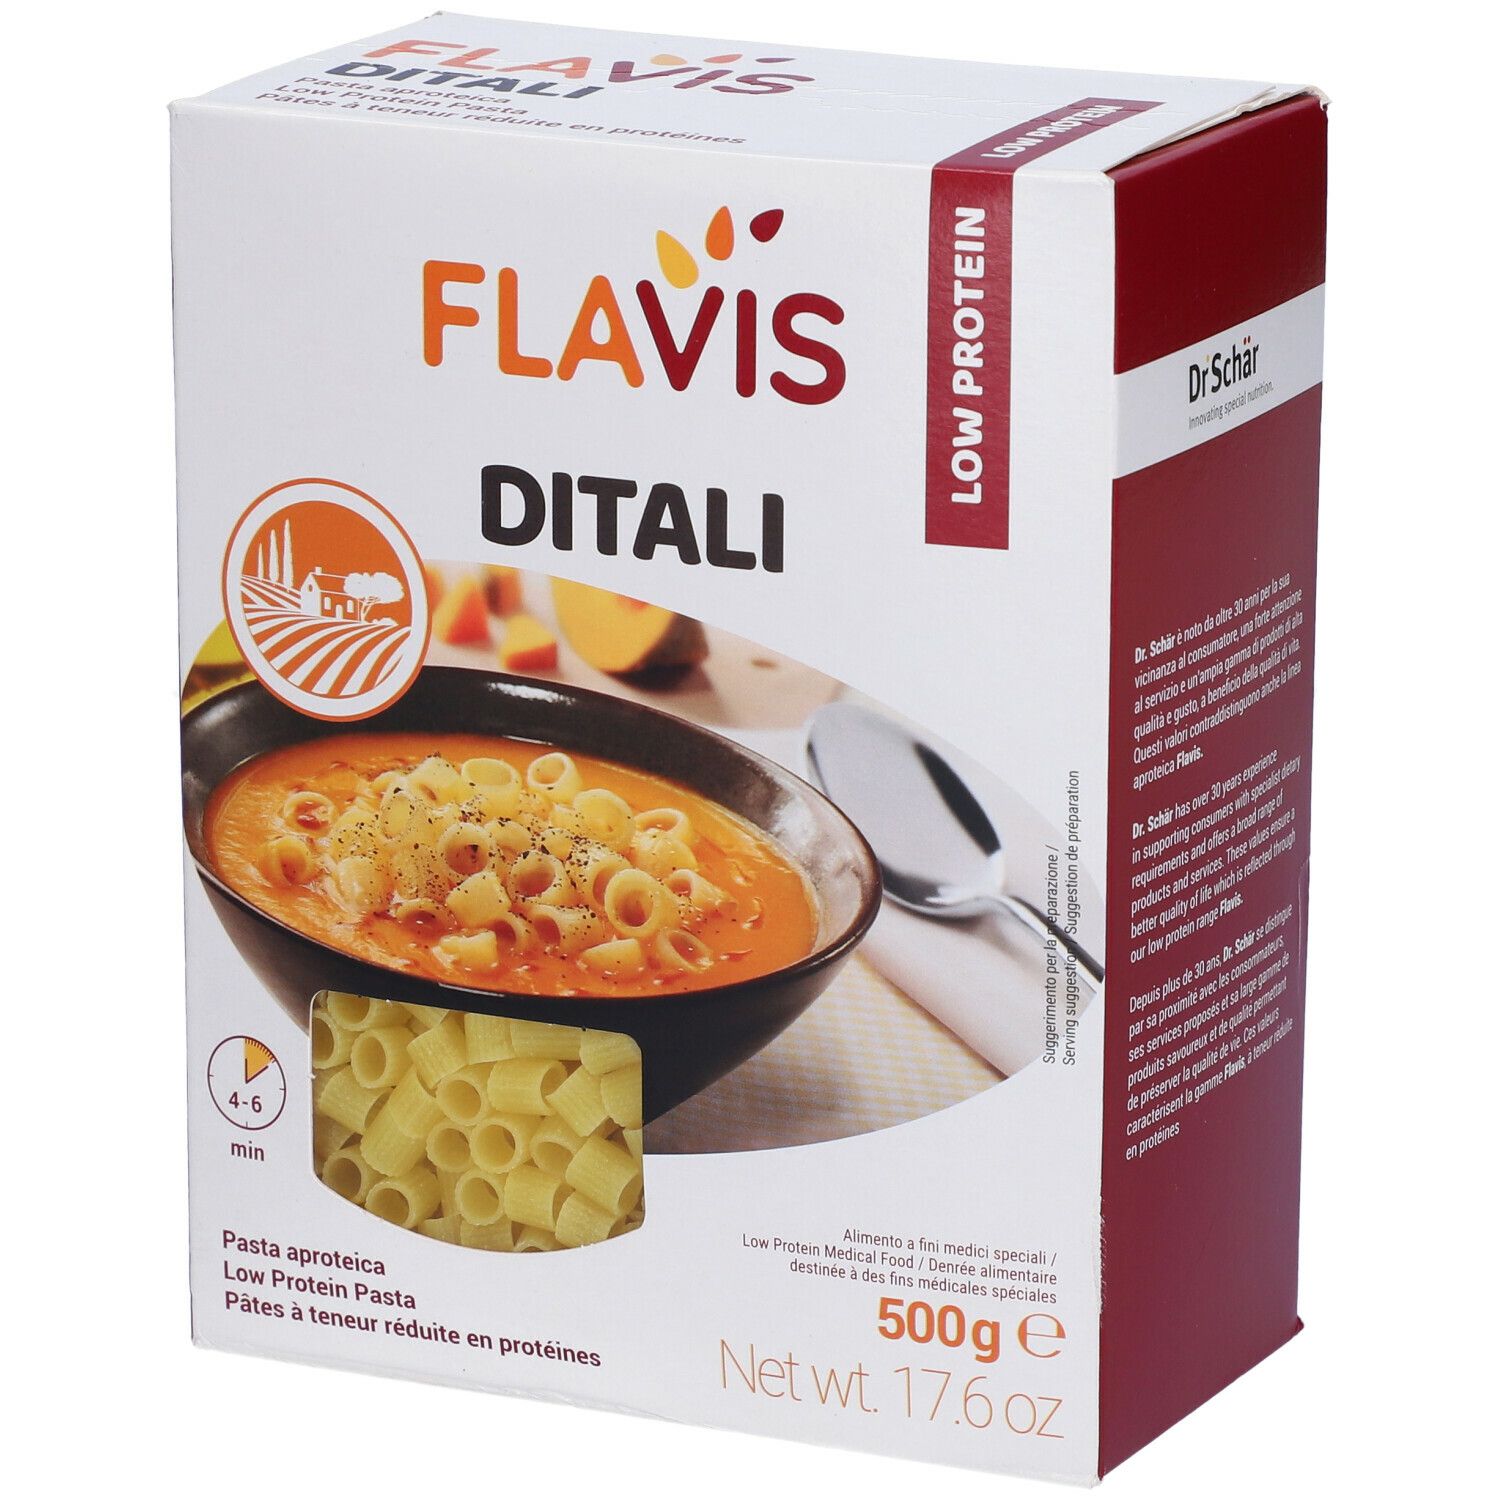 FLAVIS Ditali